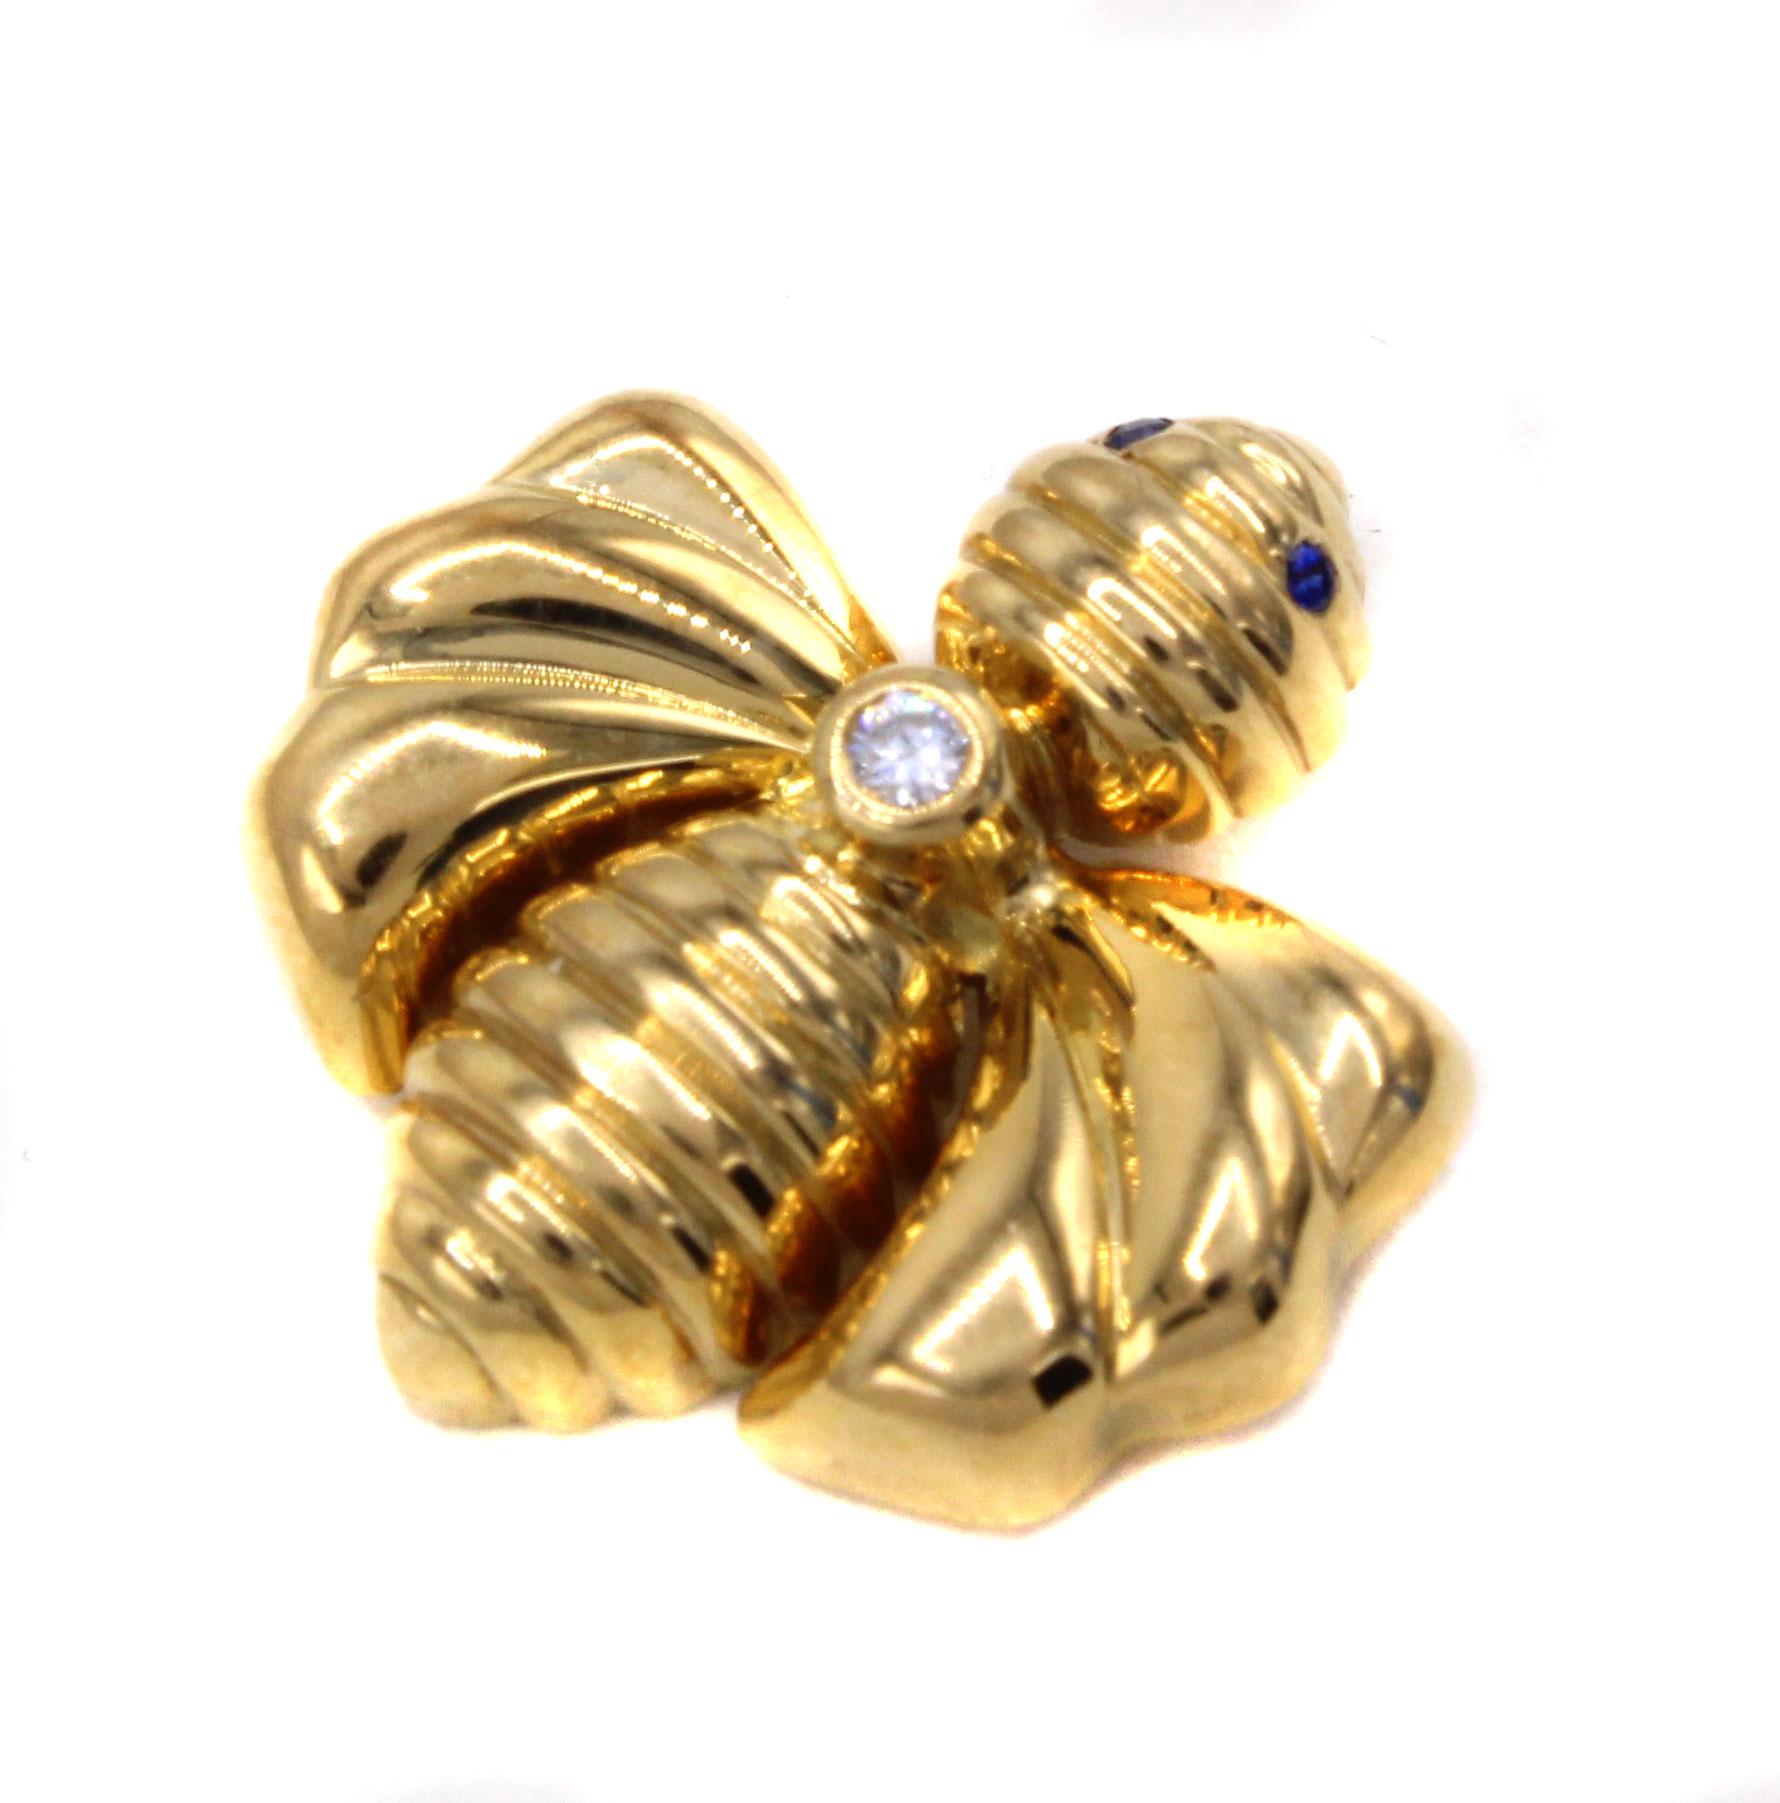 Diese von dem renommierten französischen Juwelier Chaumet entworfenen und meisterhaft handgefertigten Anhänger aus 18-karätigem Gold, auf denen eine Hummel abgebildet ist, sind ein charmanter und äußerst tragbarer Anhänger. Zwischen Kopf und Körper